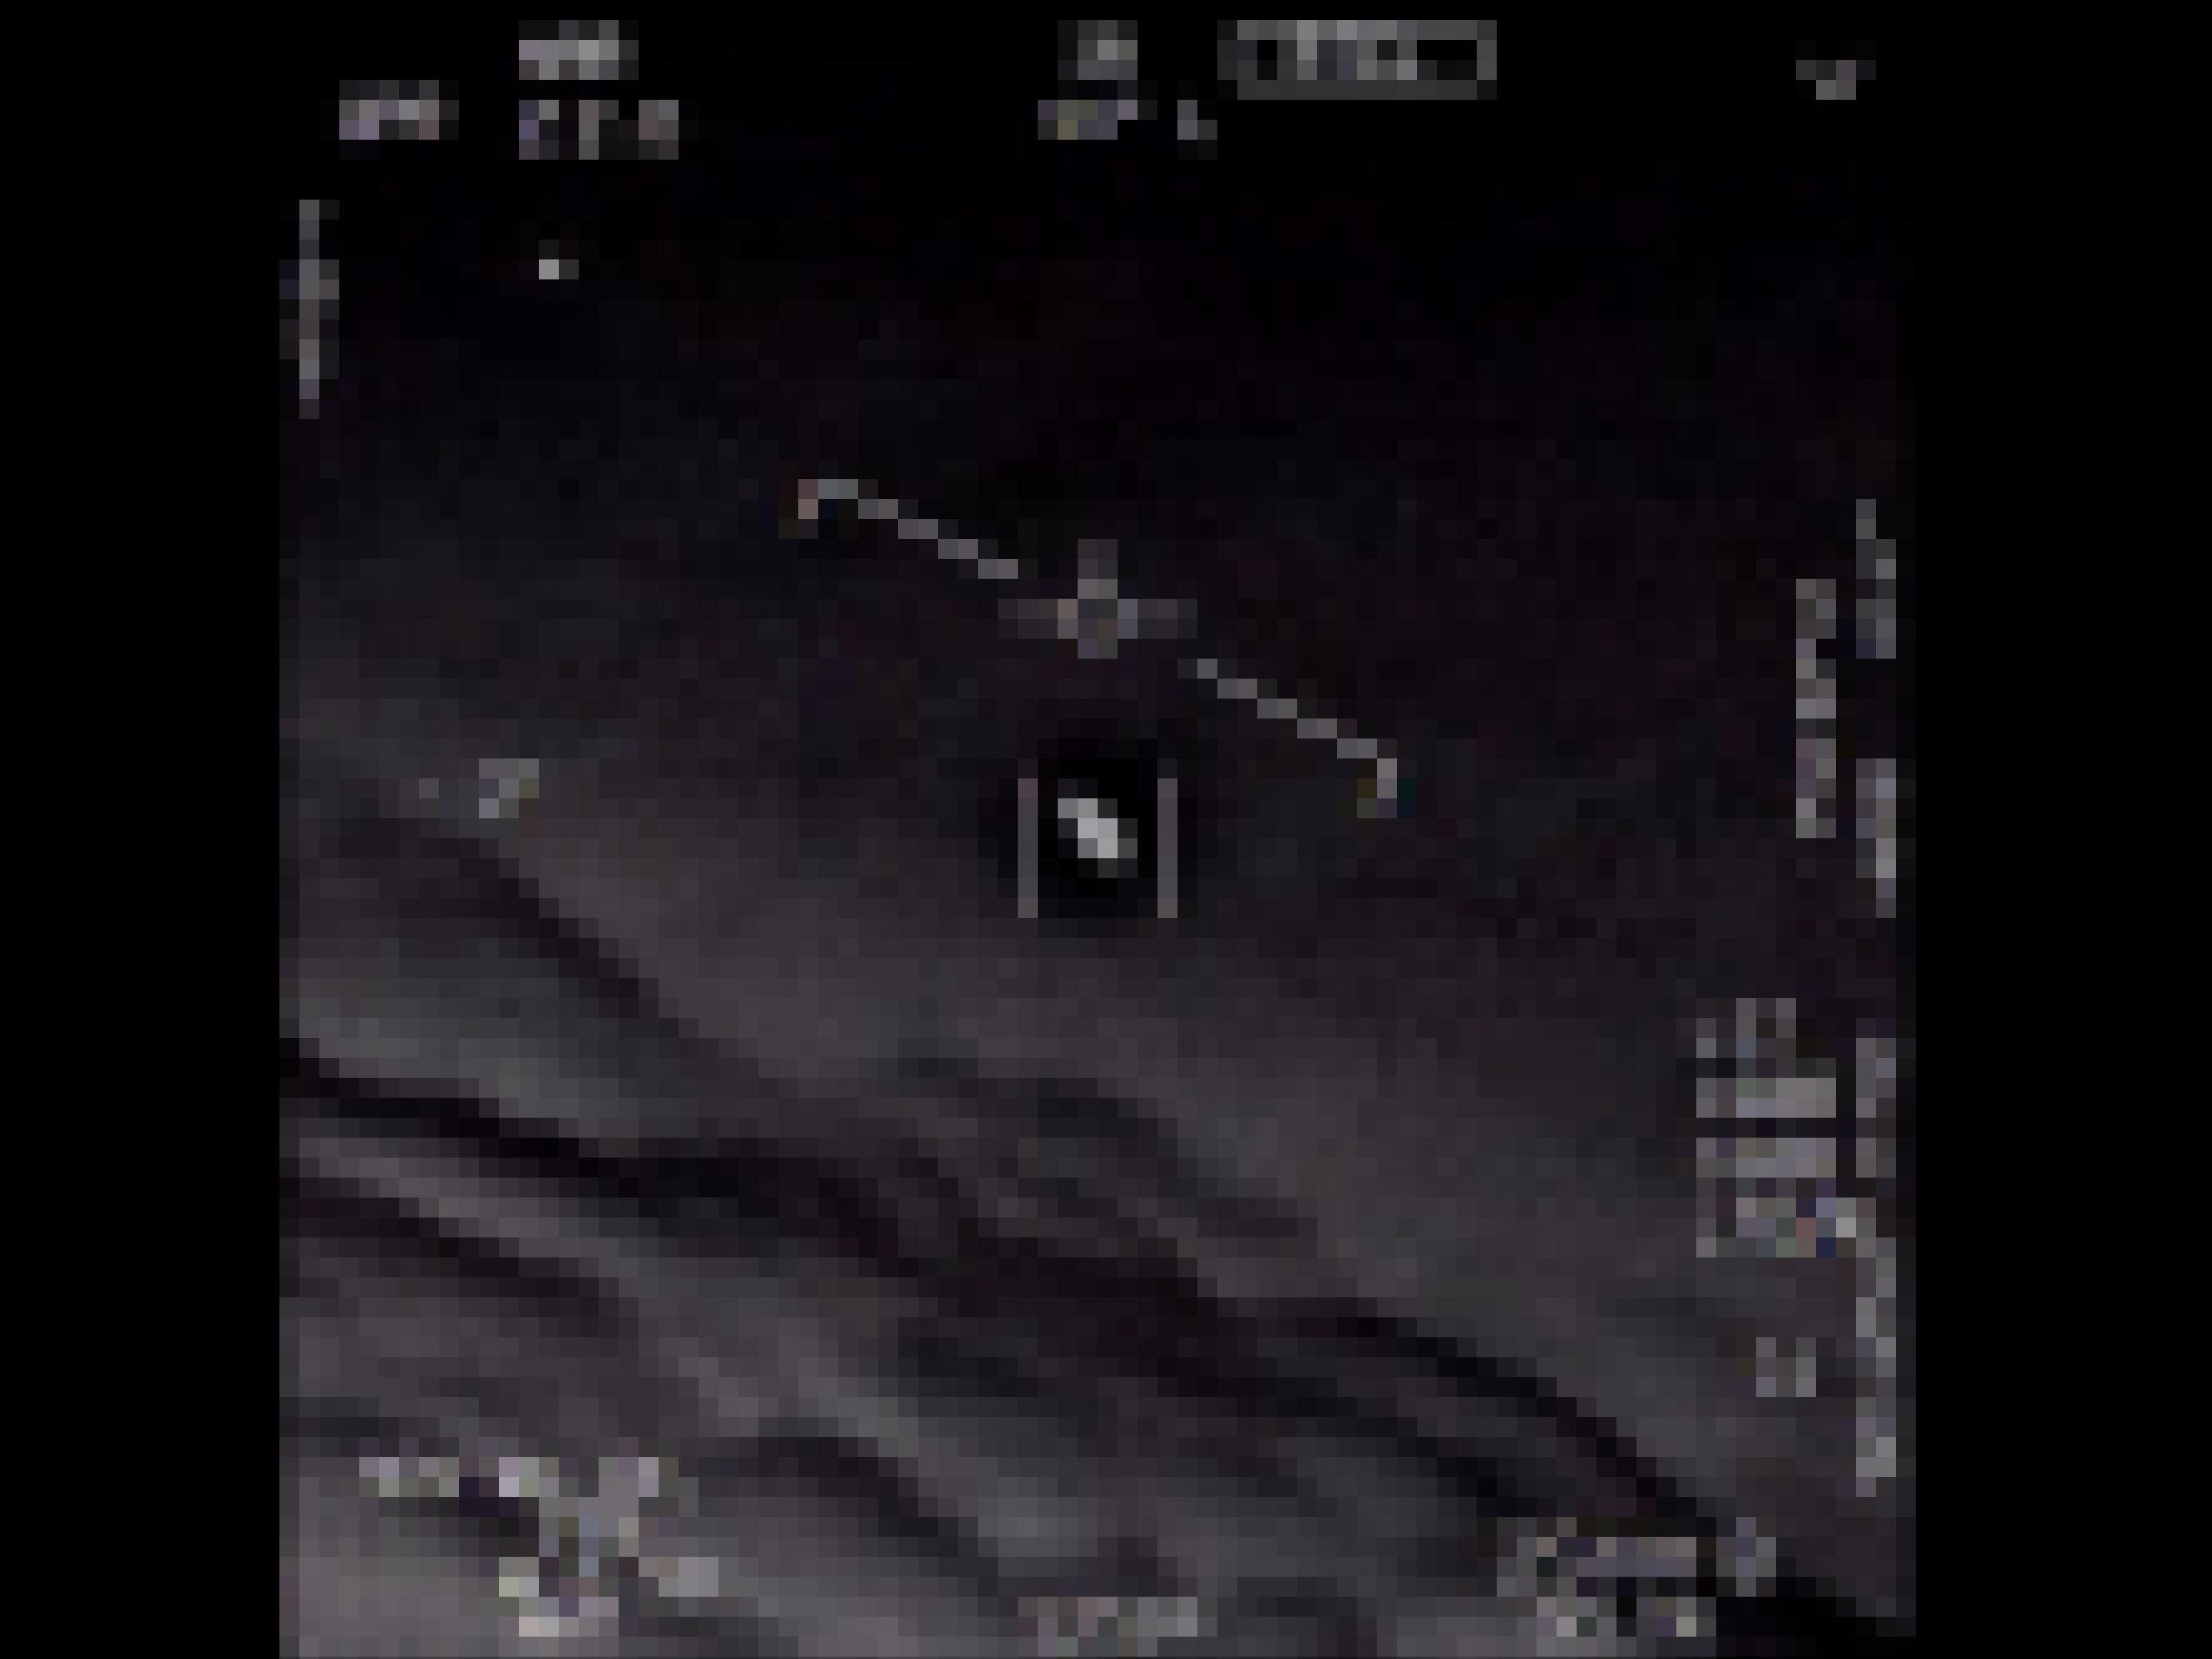 Foto aus einem Video des US-Militärs, das aus dem Cockpit eines Kampfpiloten stammt. Im Visier ein kleiner schwarzer Fleck, der sich mit großer Geschwindigkeit bewegte.